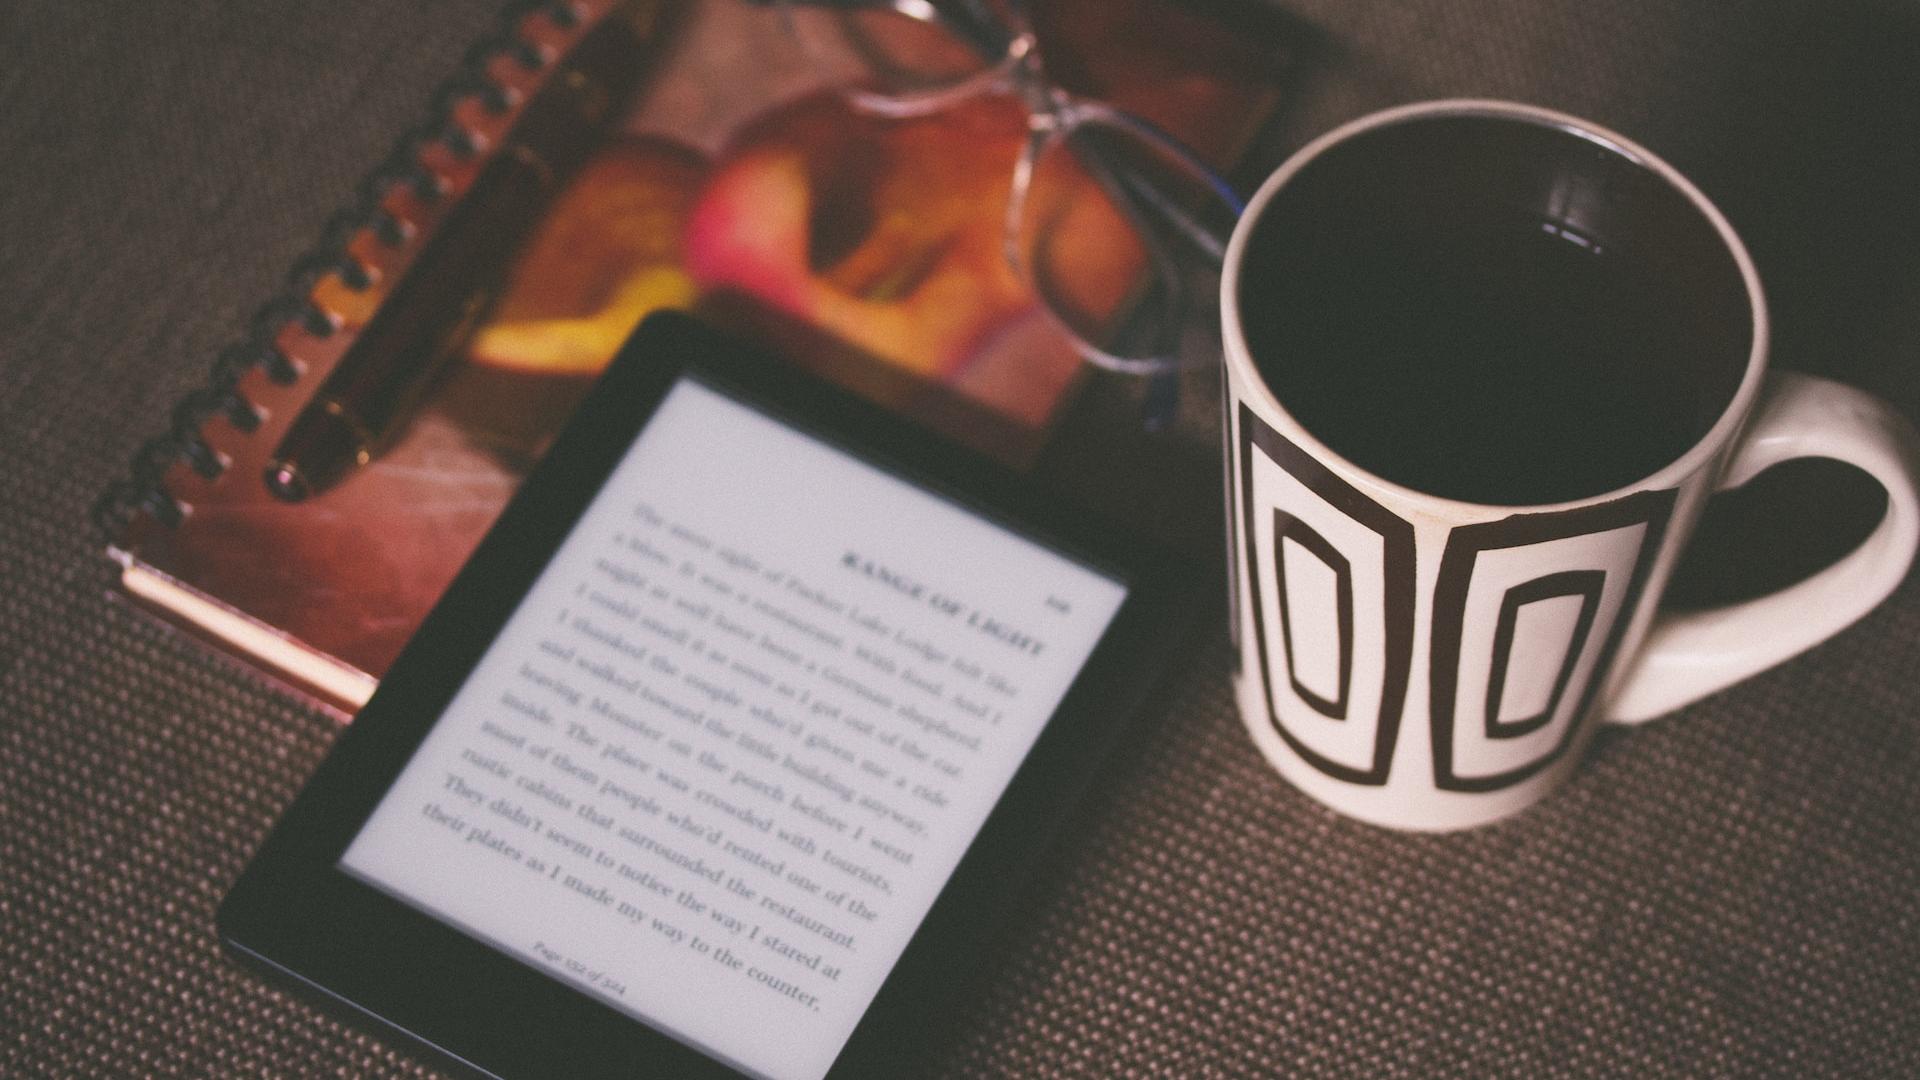 Black Kindle on a book and near a mug